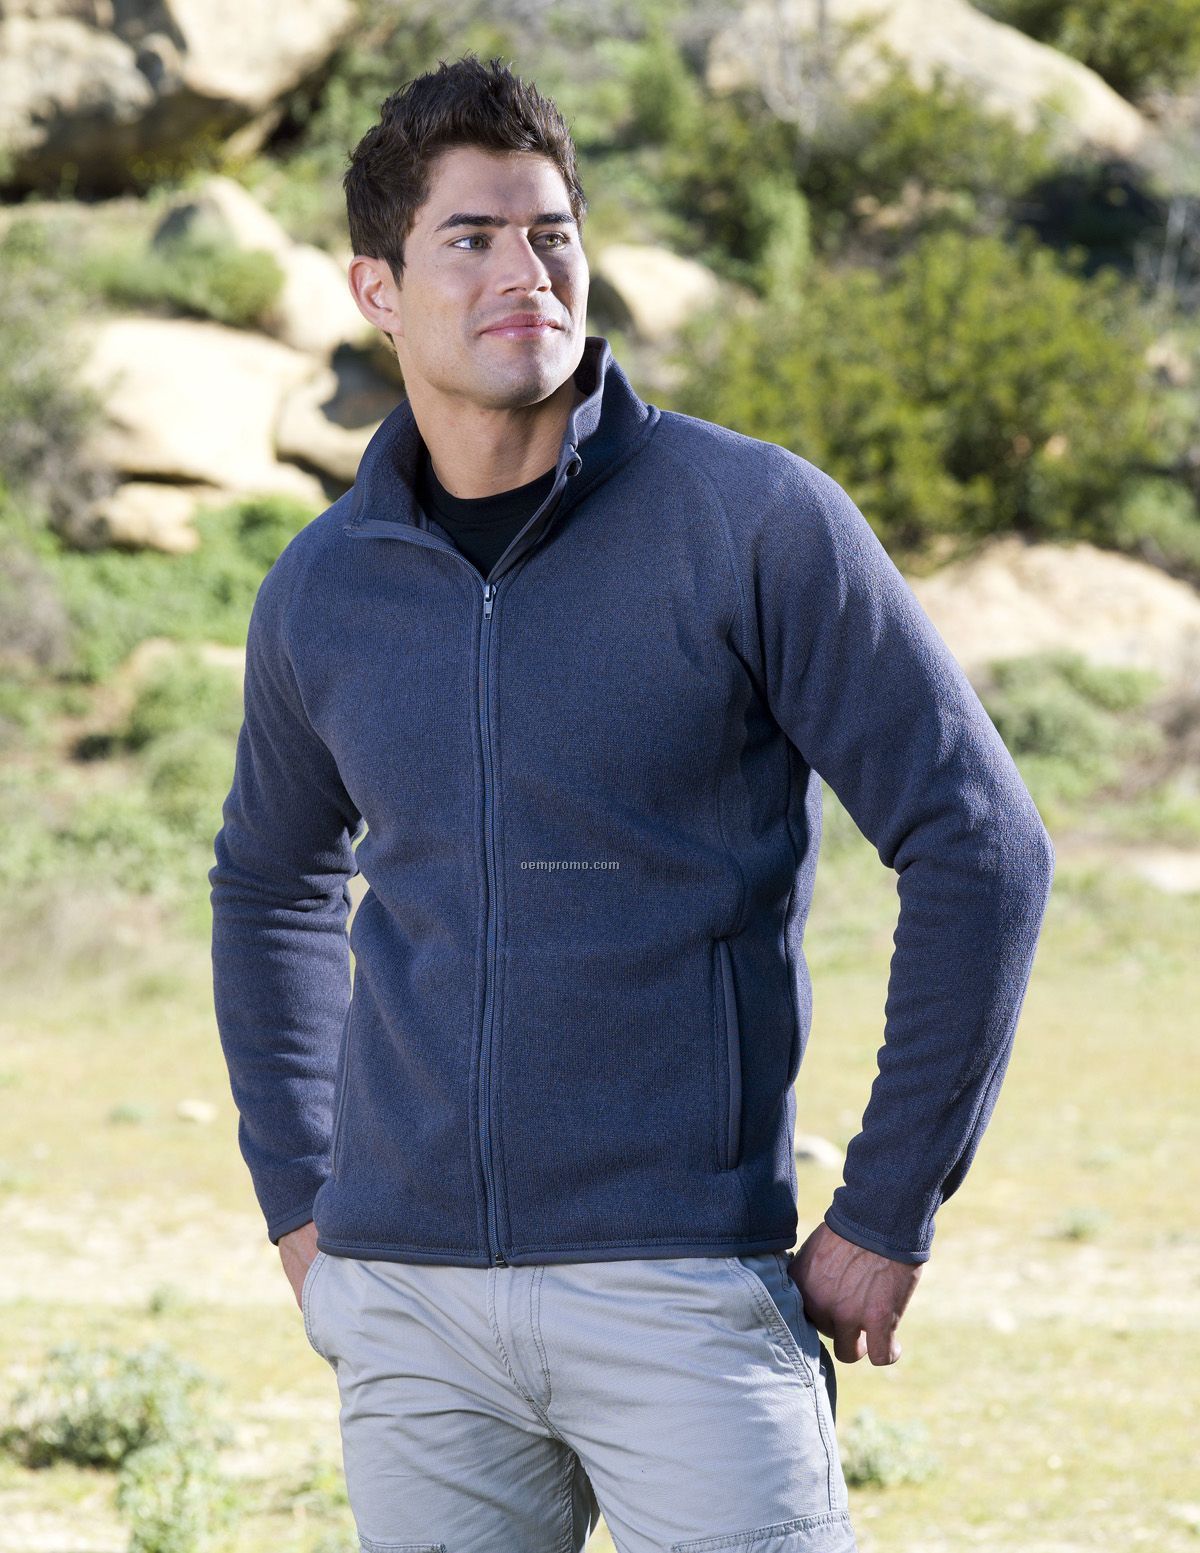 New Evan Men's 11.4 Oz. 100% Polyester Sweater Fleece Full Zip Jacket.